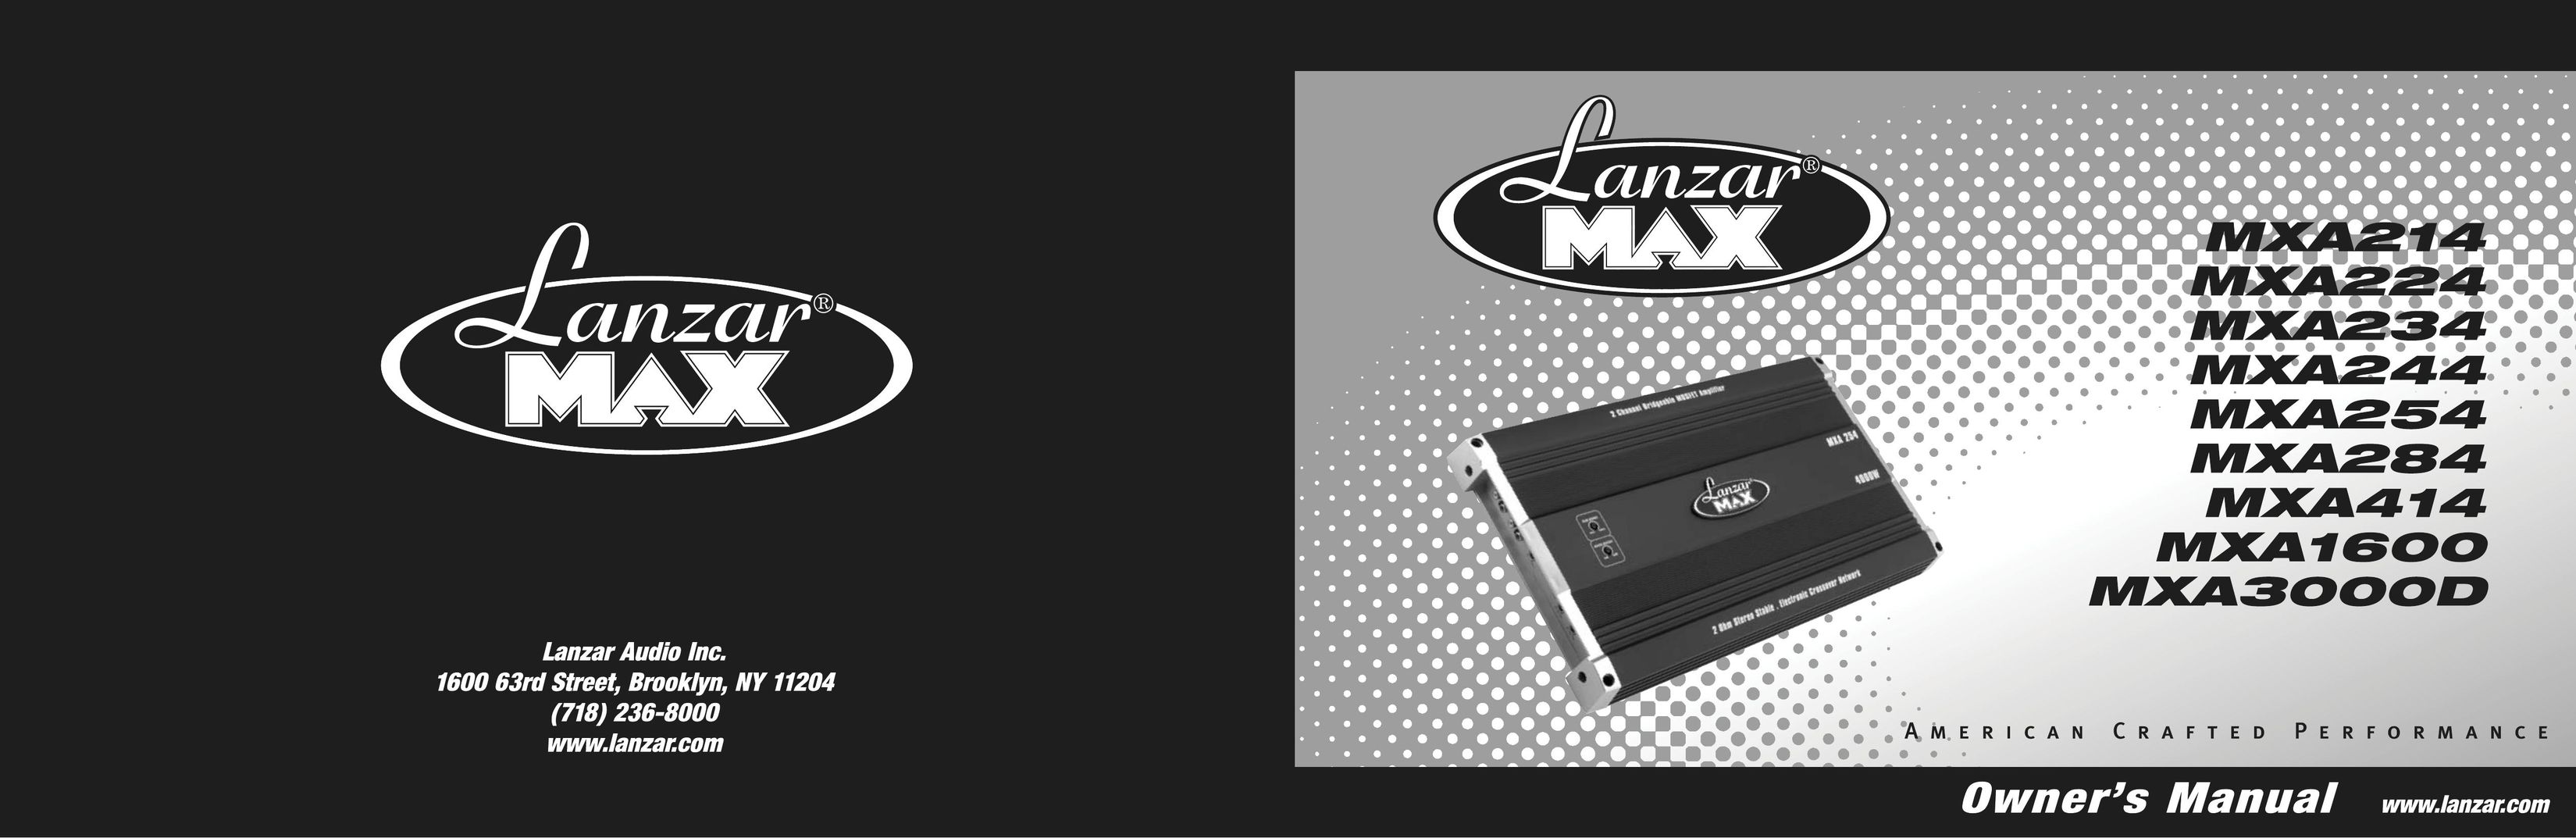 Lanzar Car Audio MXA414 Car Amplifier User Manual